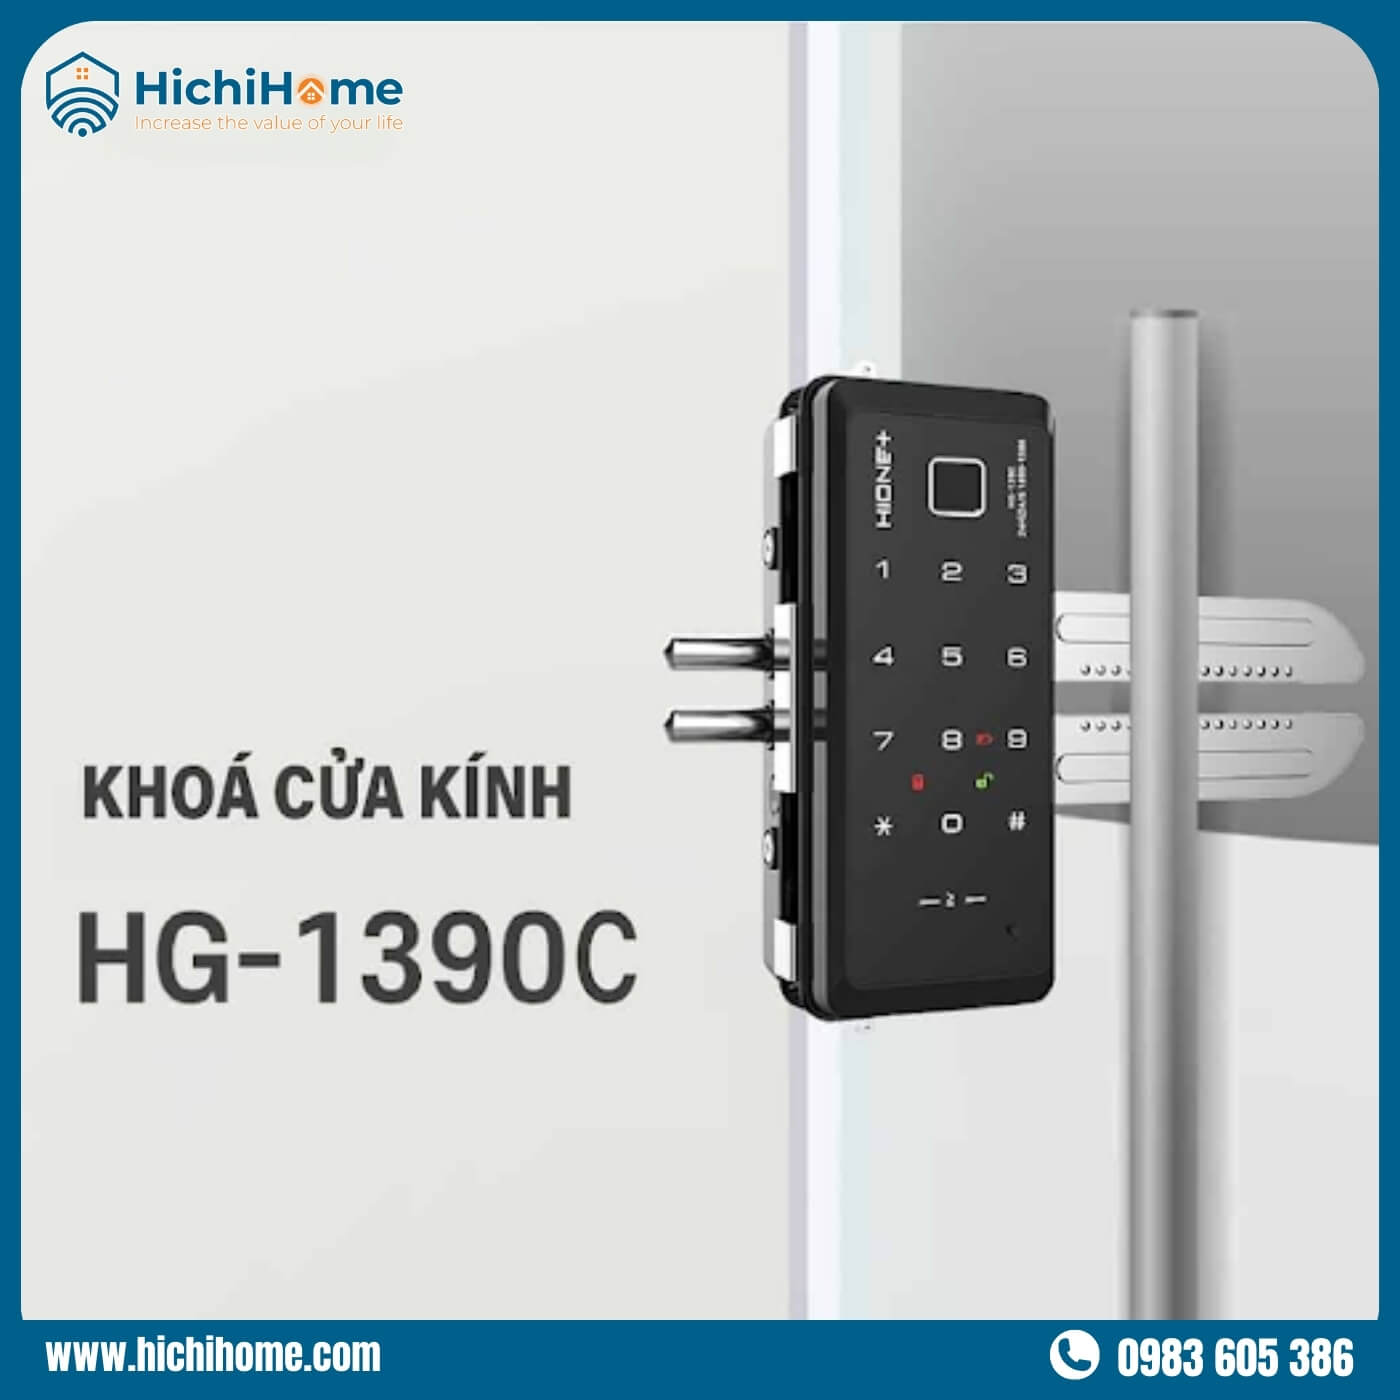 Thiết kế của HG-1390C nhỏ gọn và tinh tế